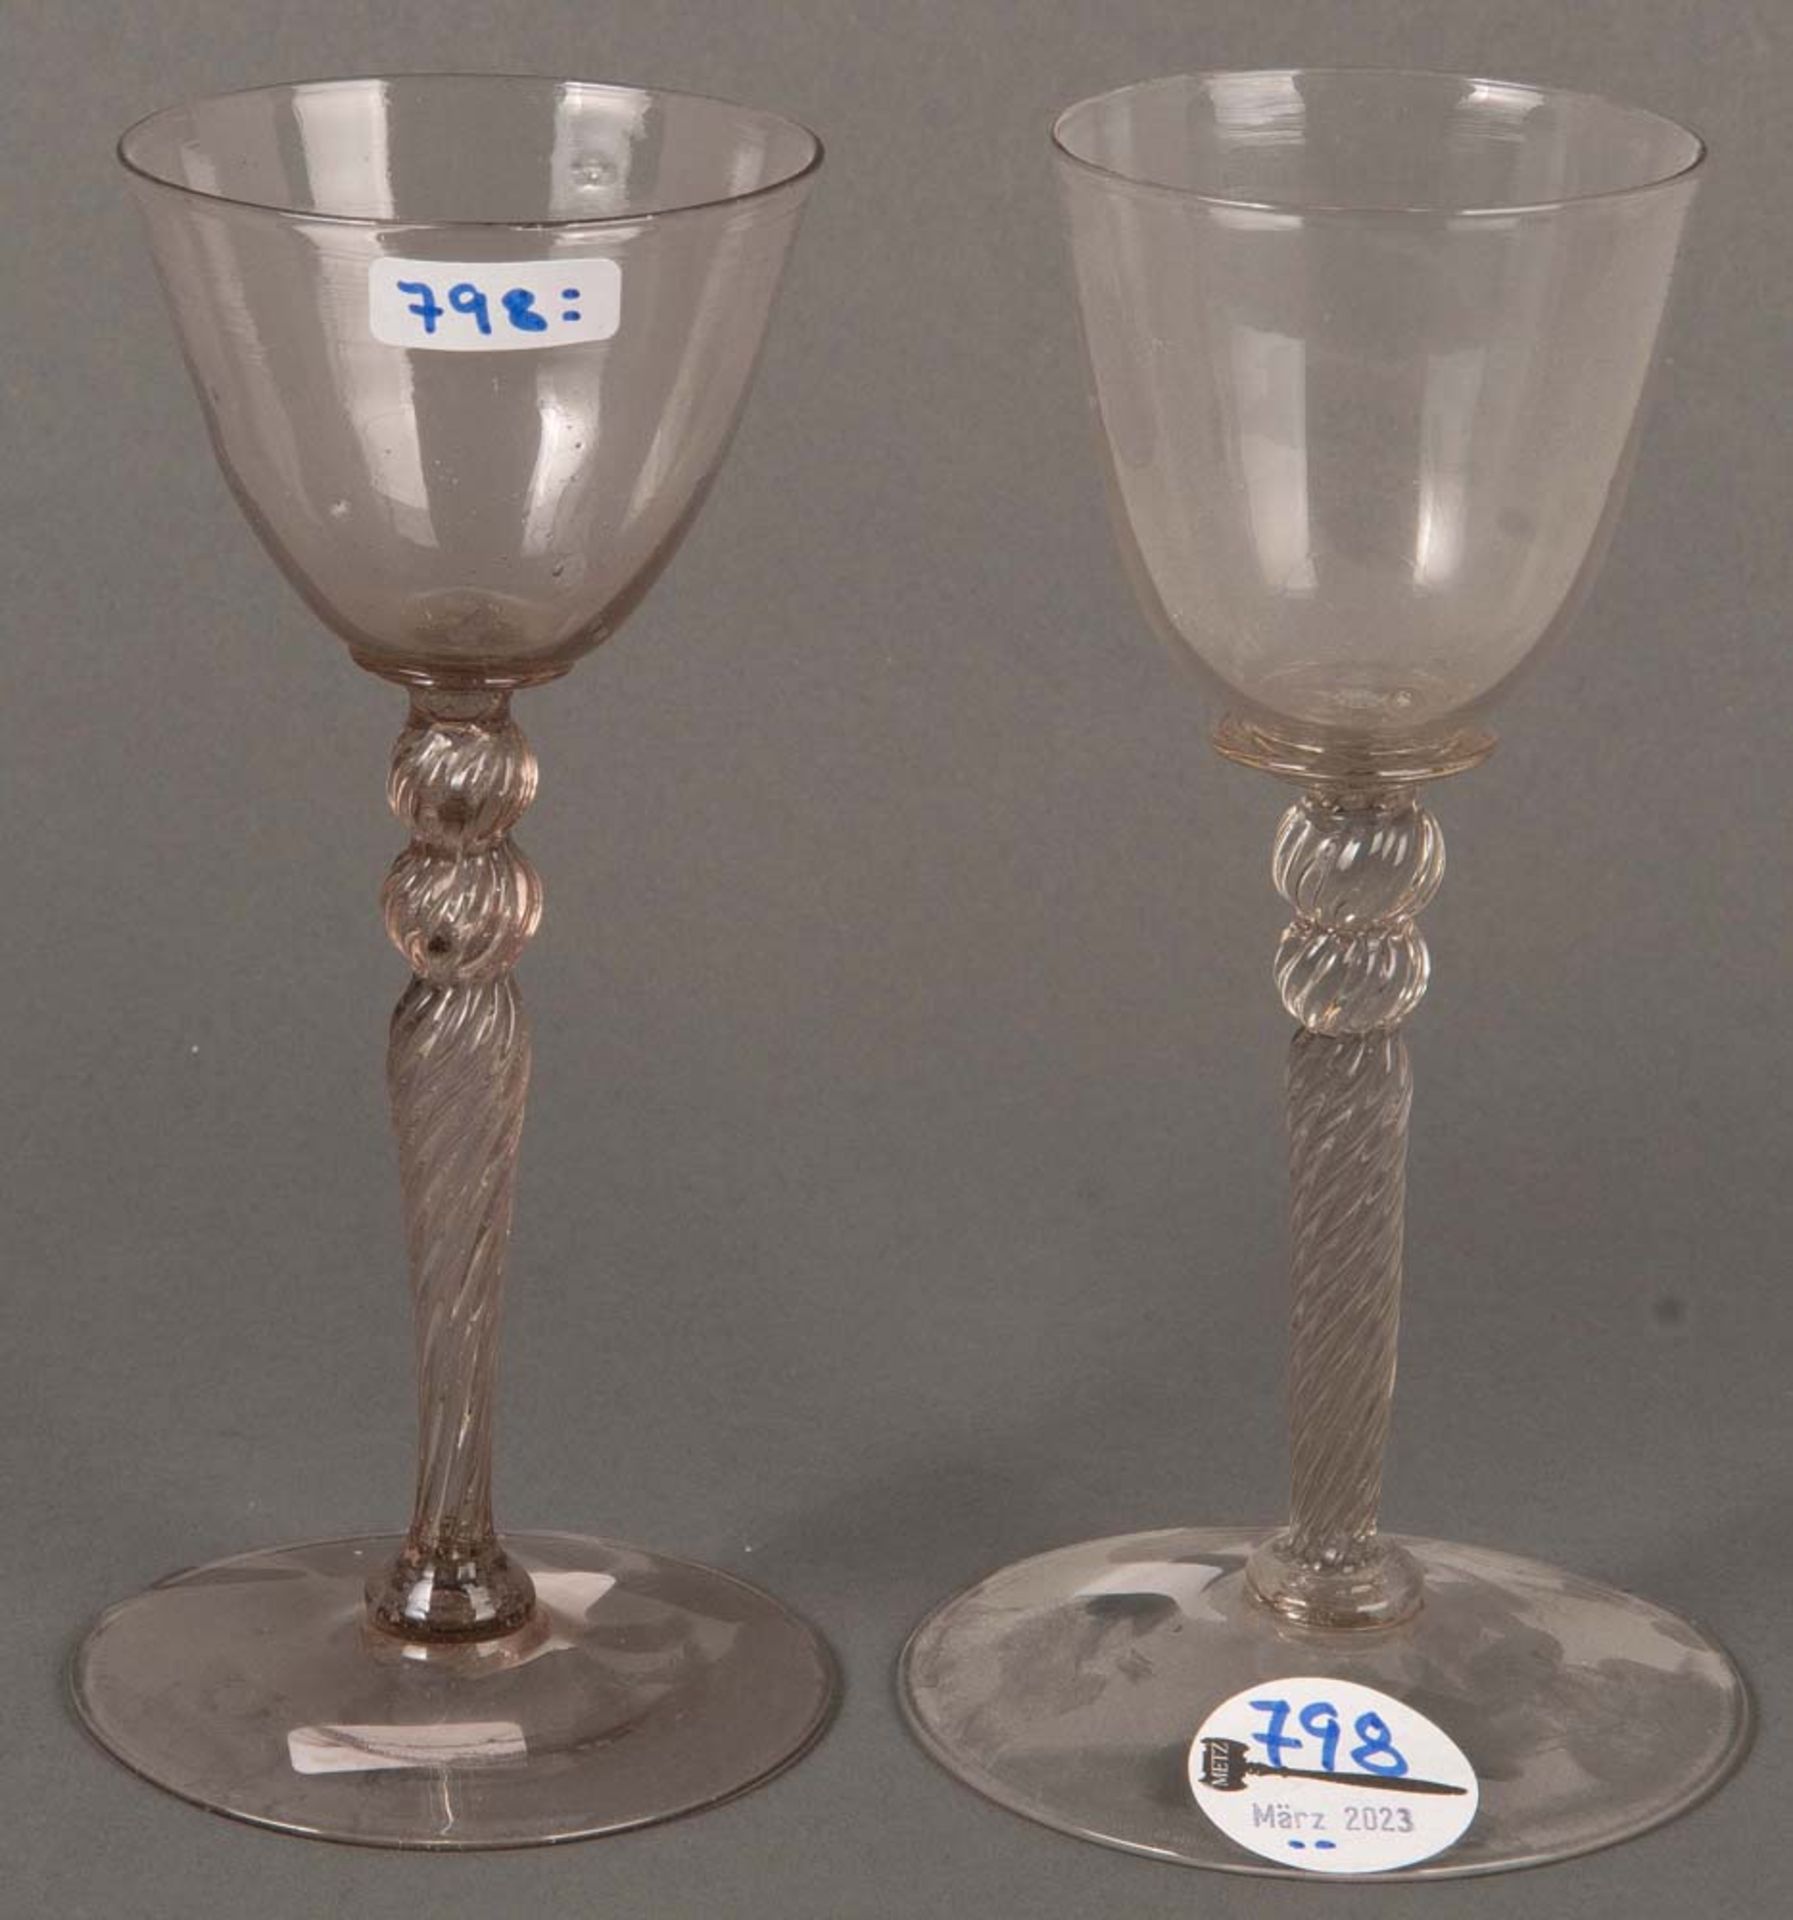 Paar Trinkgläser. Deutsch 18. Jh. Farbloses Glas mit gewundenem Stiel, H=17,6 cm.